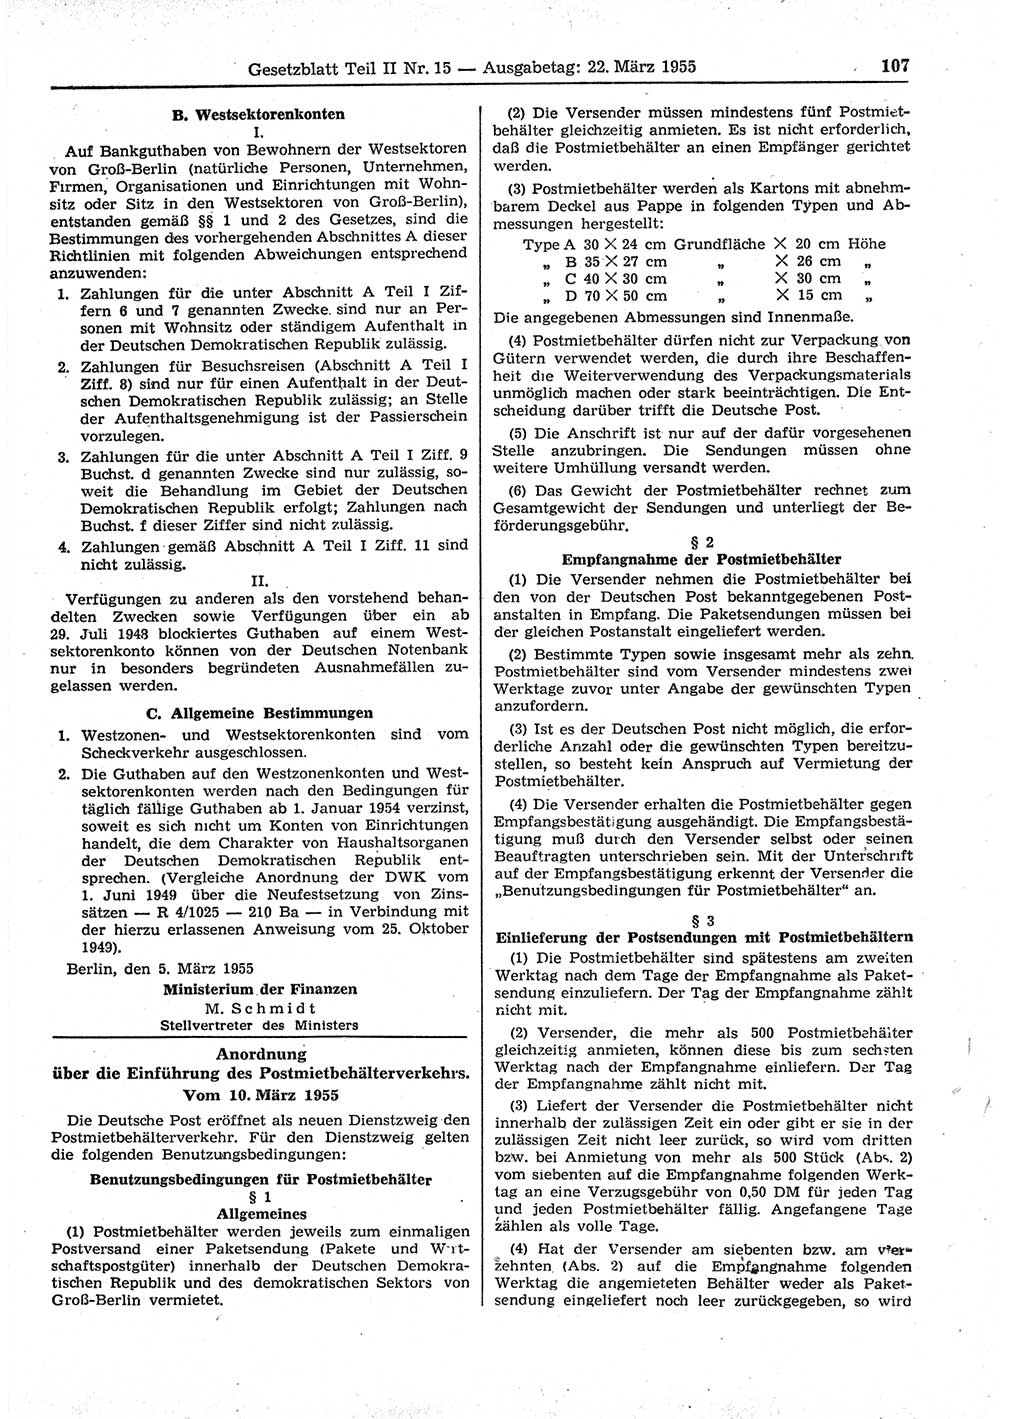 Gesetzblatt (GBl.) der Deutschen Demokratischen Republik (DDR) Teil ⅠⅠ 1955, Seite 107 (GBl. DDR ⅠⅠ 1955, S. 107)